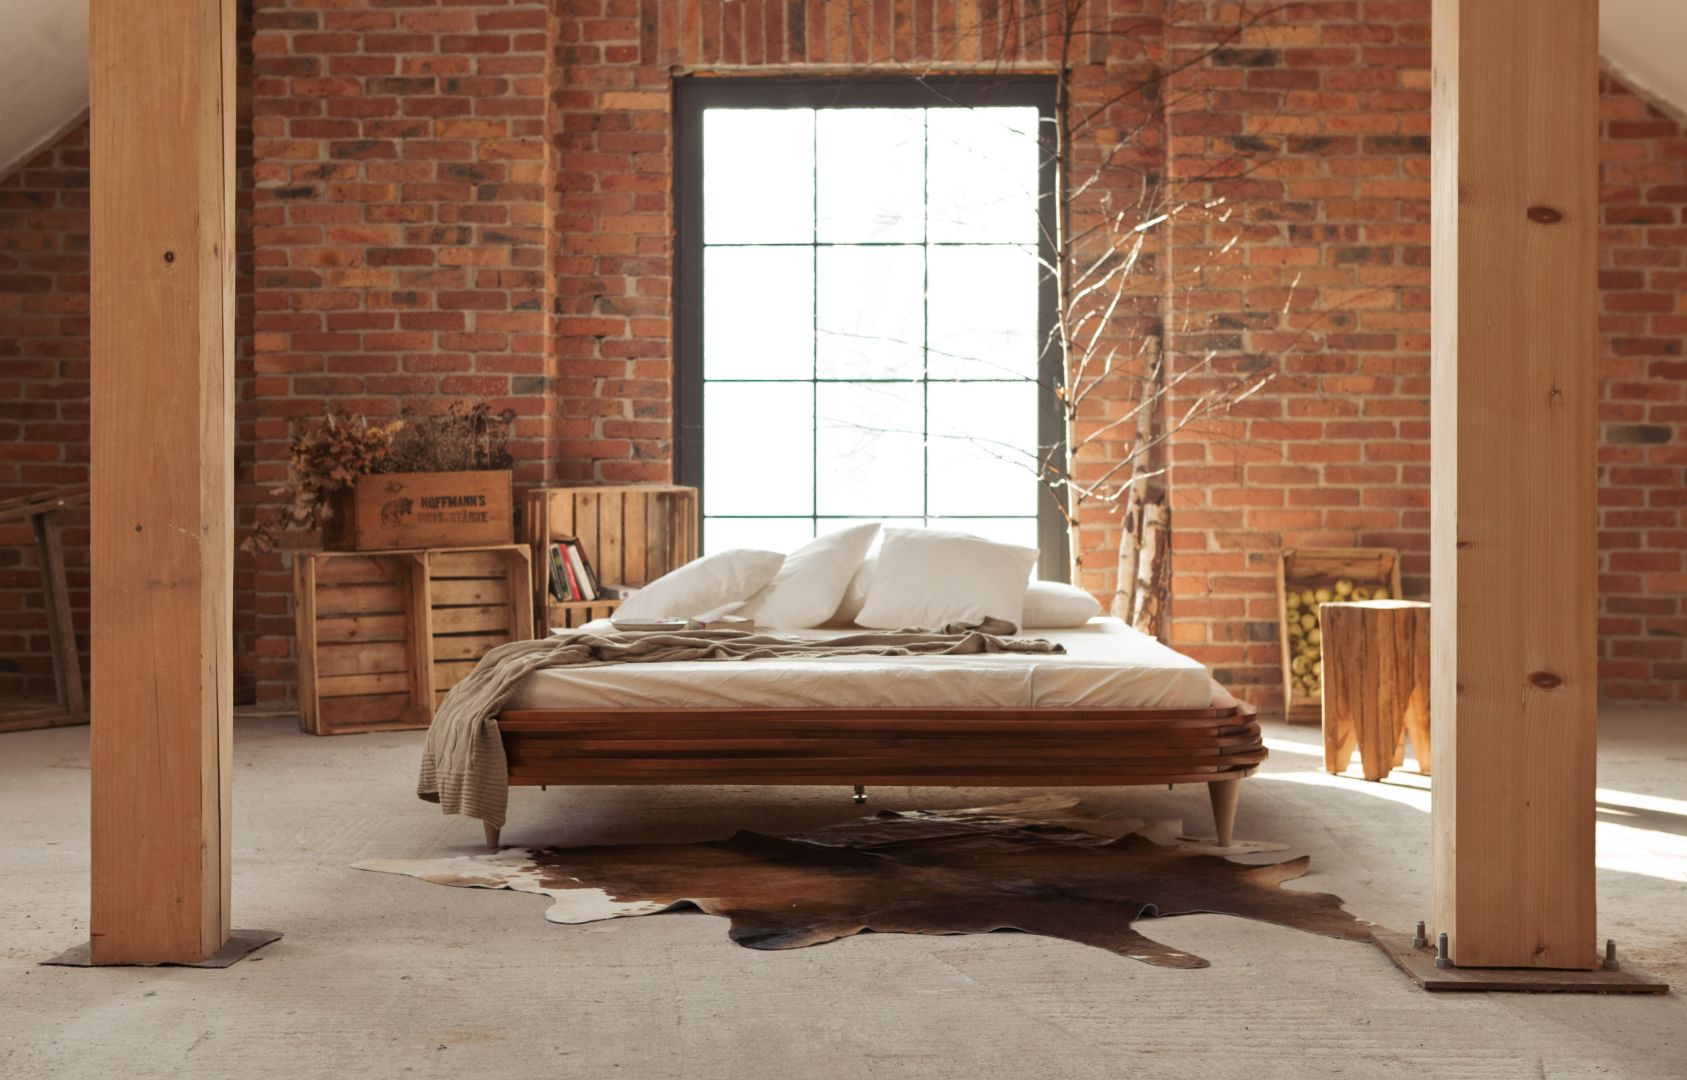 Nałożone na siebie warstwowo płaty drewna tworzą nietypową i jednocześnie elegancką ramę łóżka. Brak zagłówka sprawia, że model ten doskonale nadaje się do ustawienia na środku sypialni. Fot. Gie-el